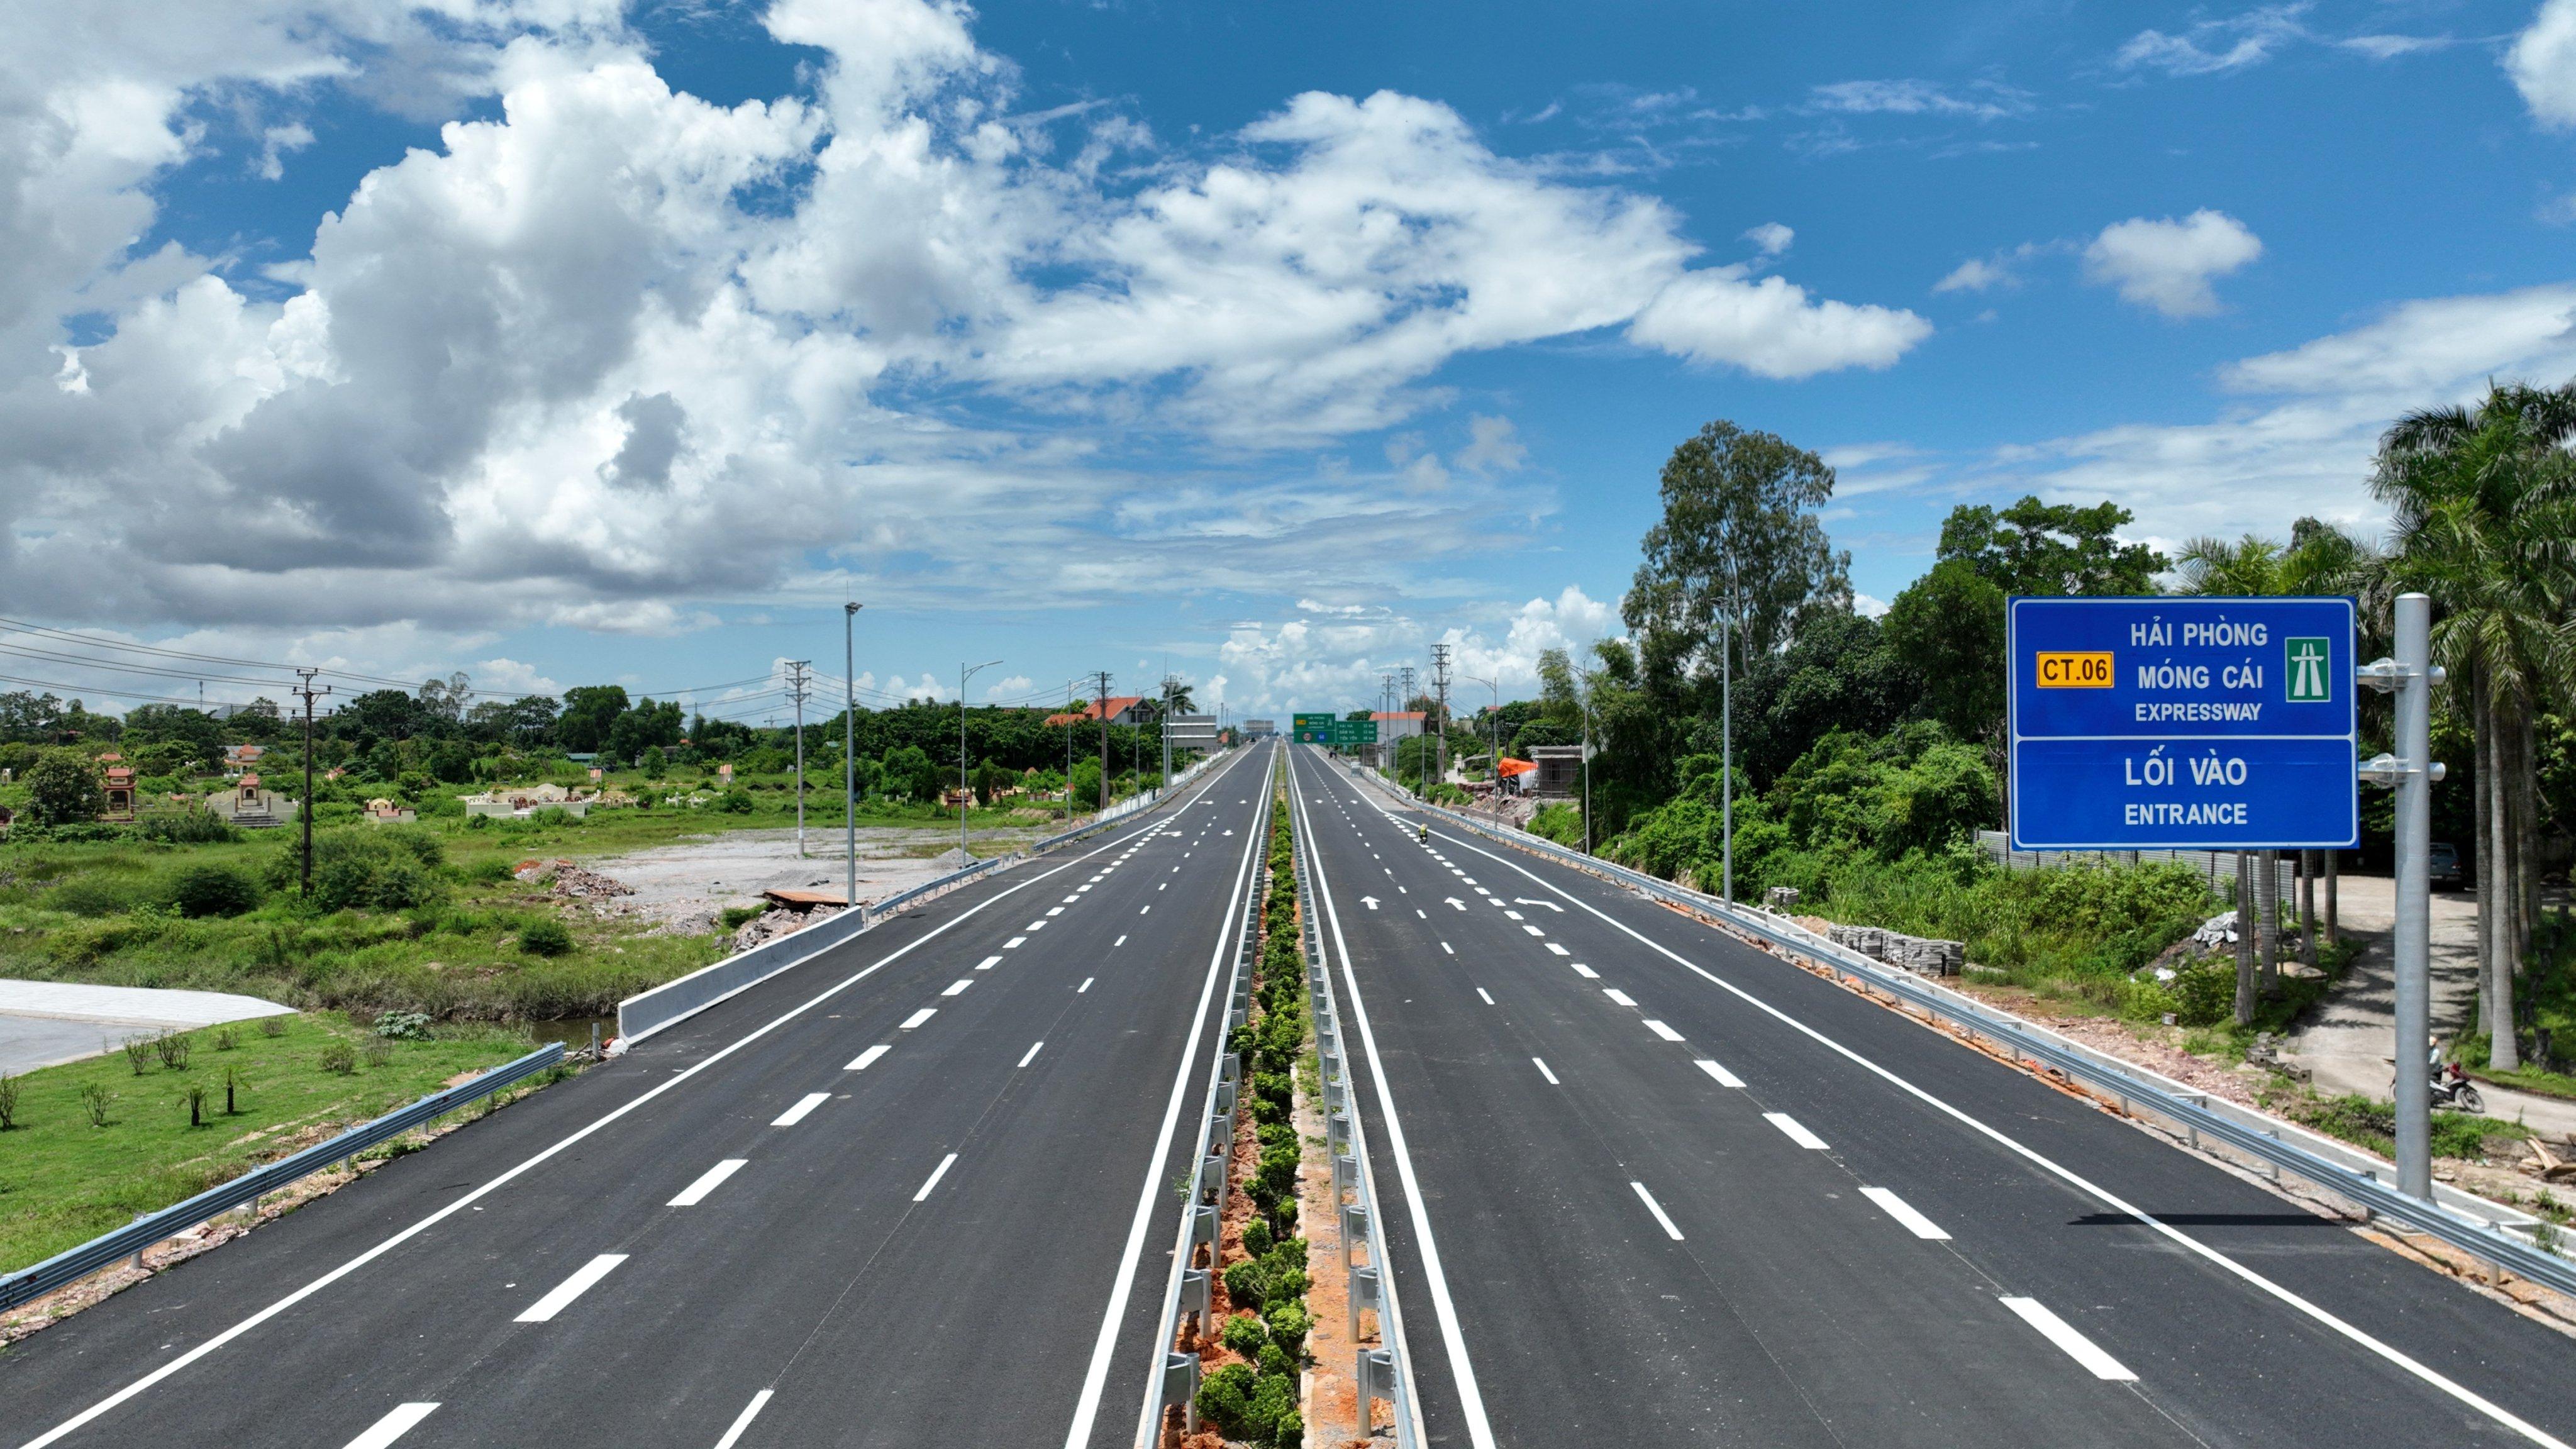 Dự án cao tốc Vân Đồn - Móng Cái nằm trong hệ thống tuyến cao tốc Hà Nội - Quảng Ninh, được xác định là tuyến đường có ý nghĩa chiến lược trong sự phát triển KT-XH của tỉnh và khu vực.